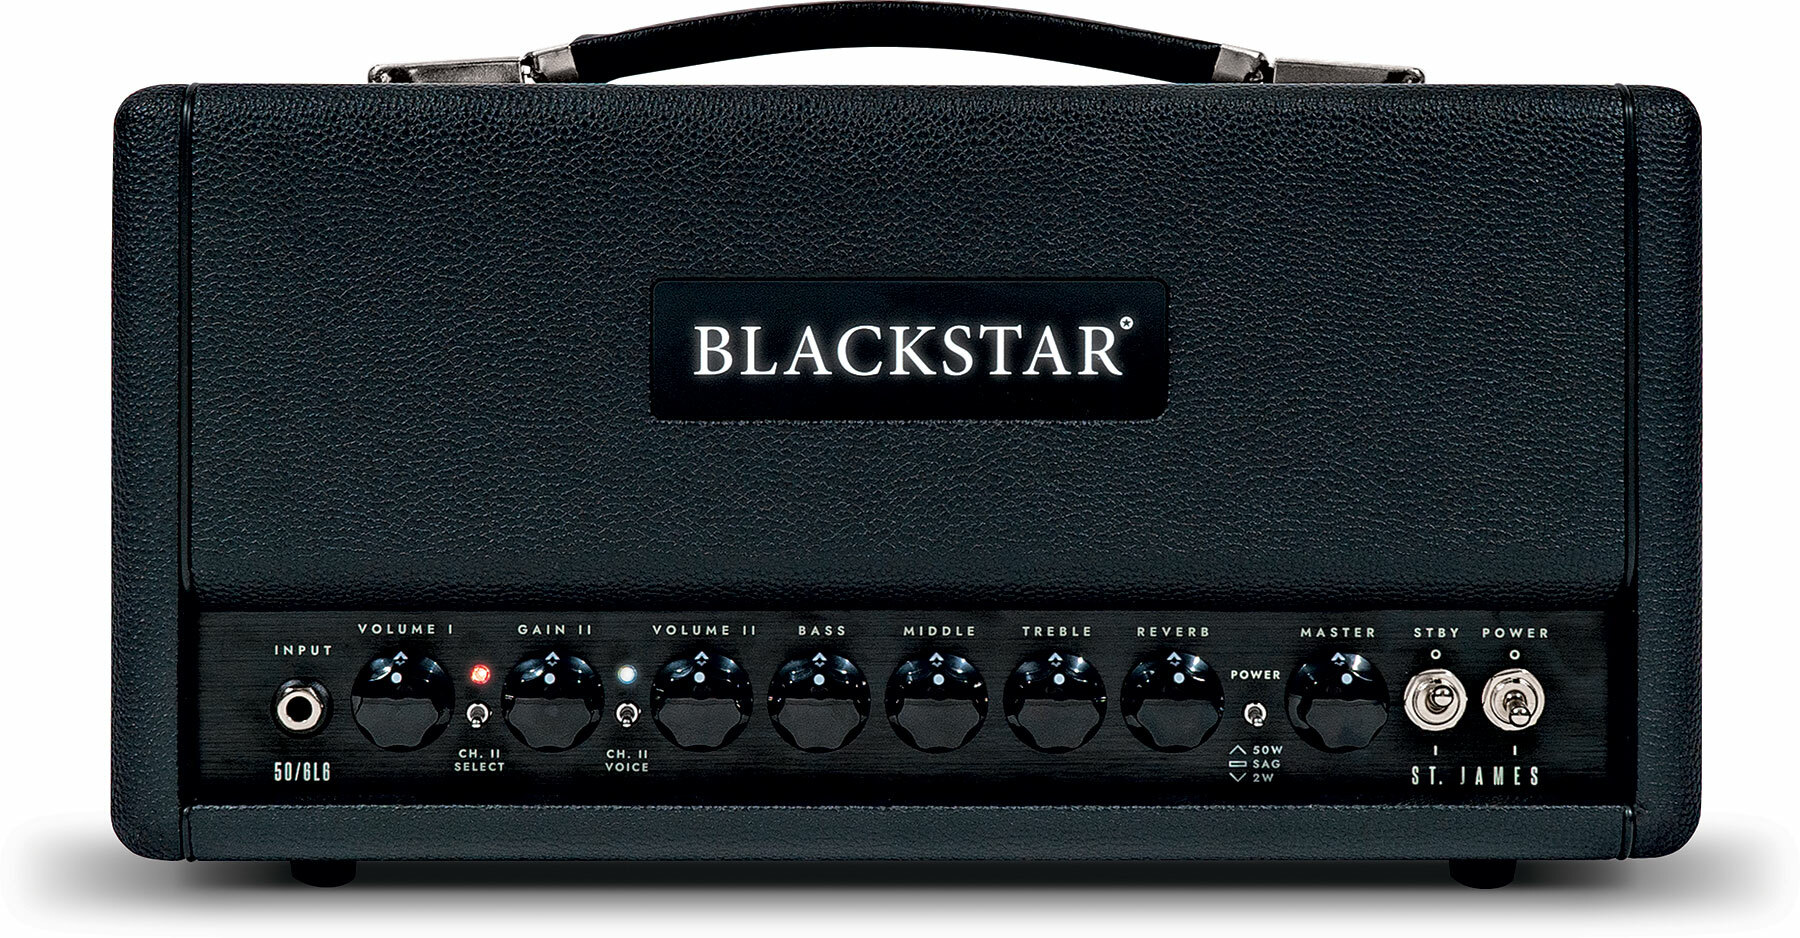 Blackstar St James 6l6h Head 50/5/2w Black - Ampli Guitare Électrique TÊte / PÉdale - Main picture